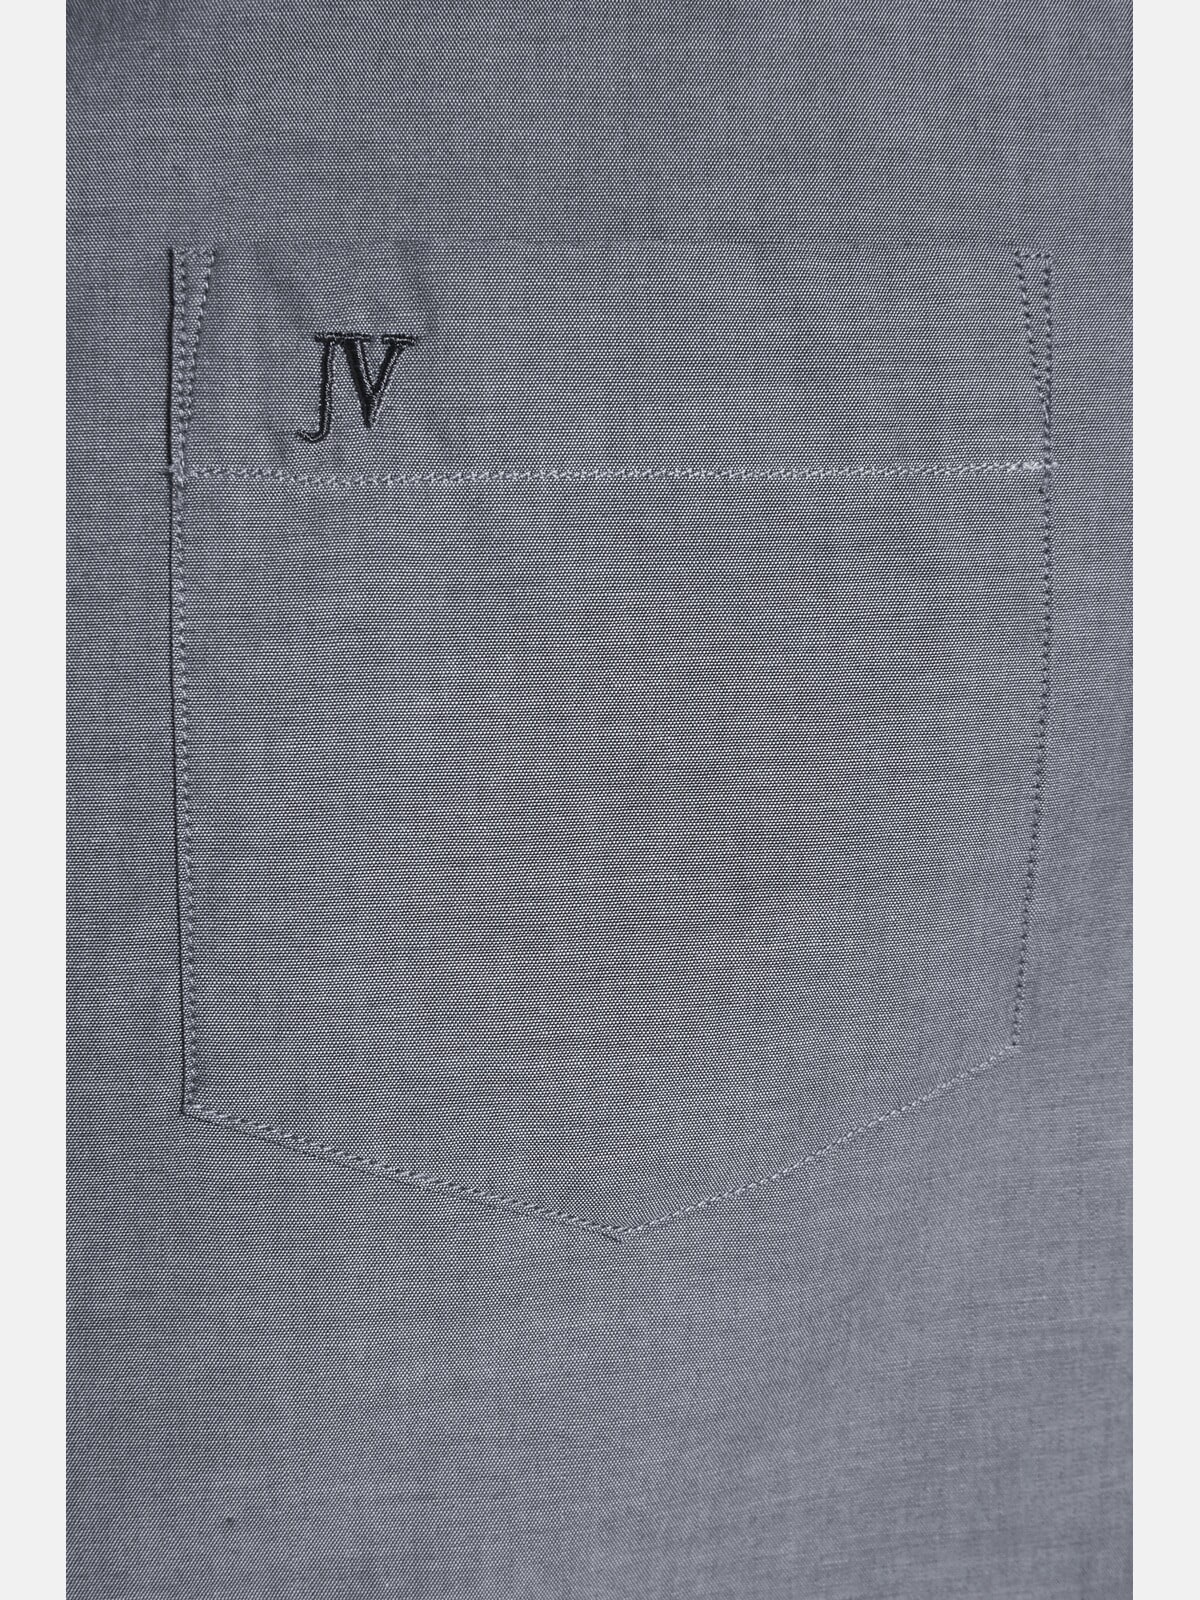 Jan Vanderstorm Langarmhemd »Doppelpack Hemd ULFE«, (2 tlg.), in zwei Farben